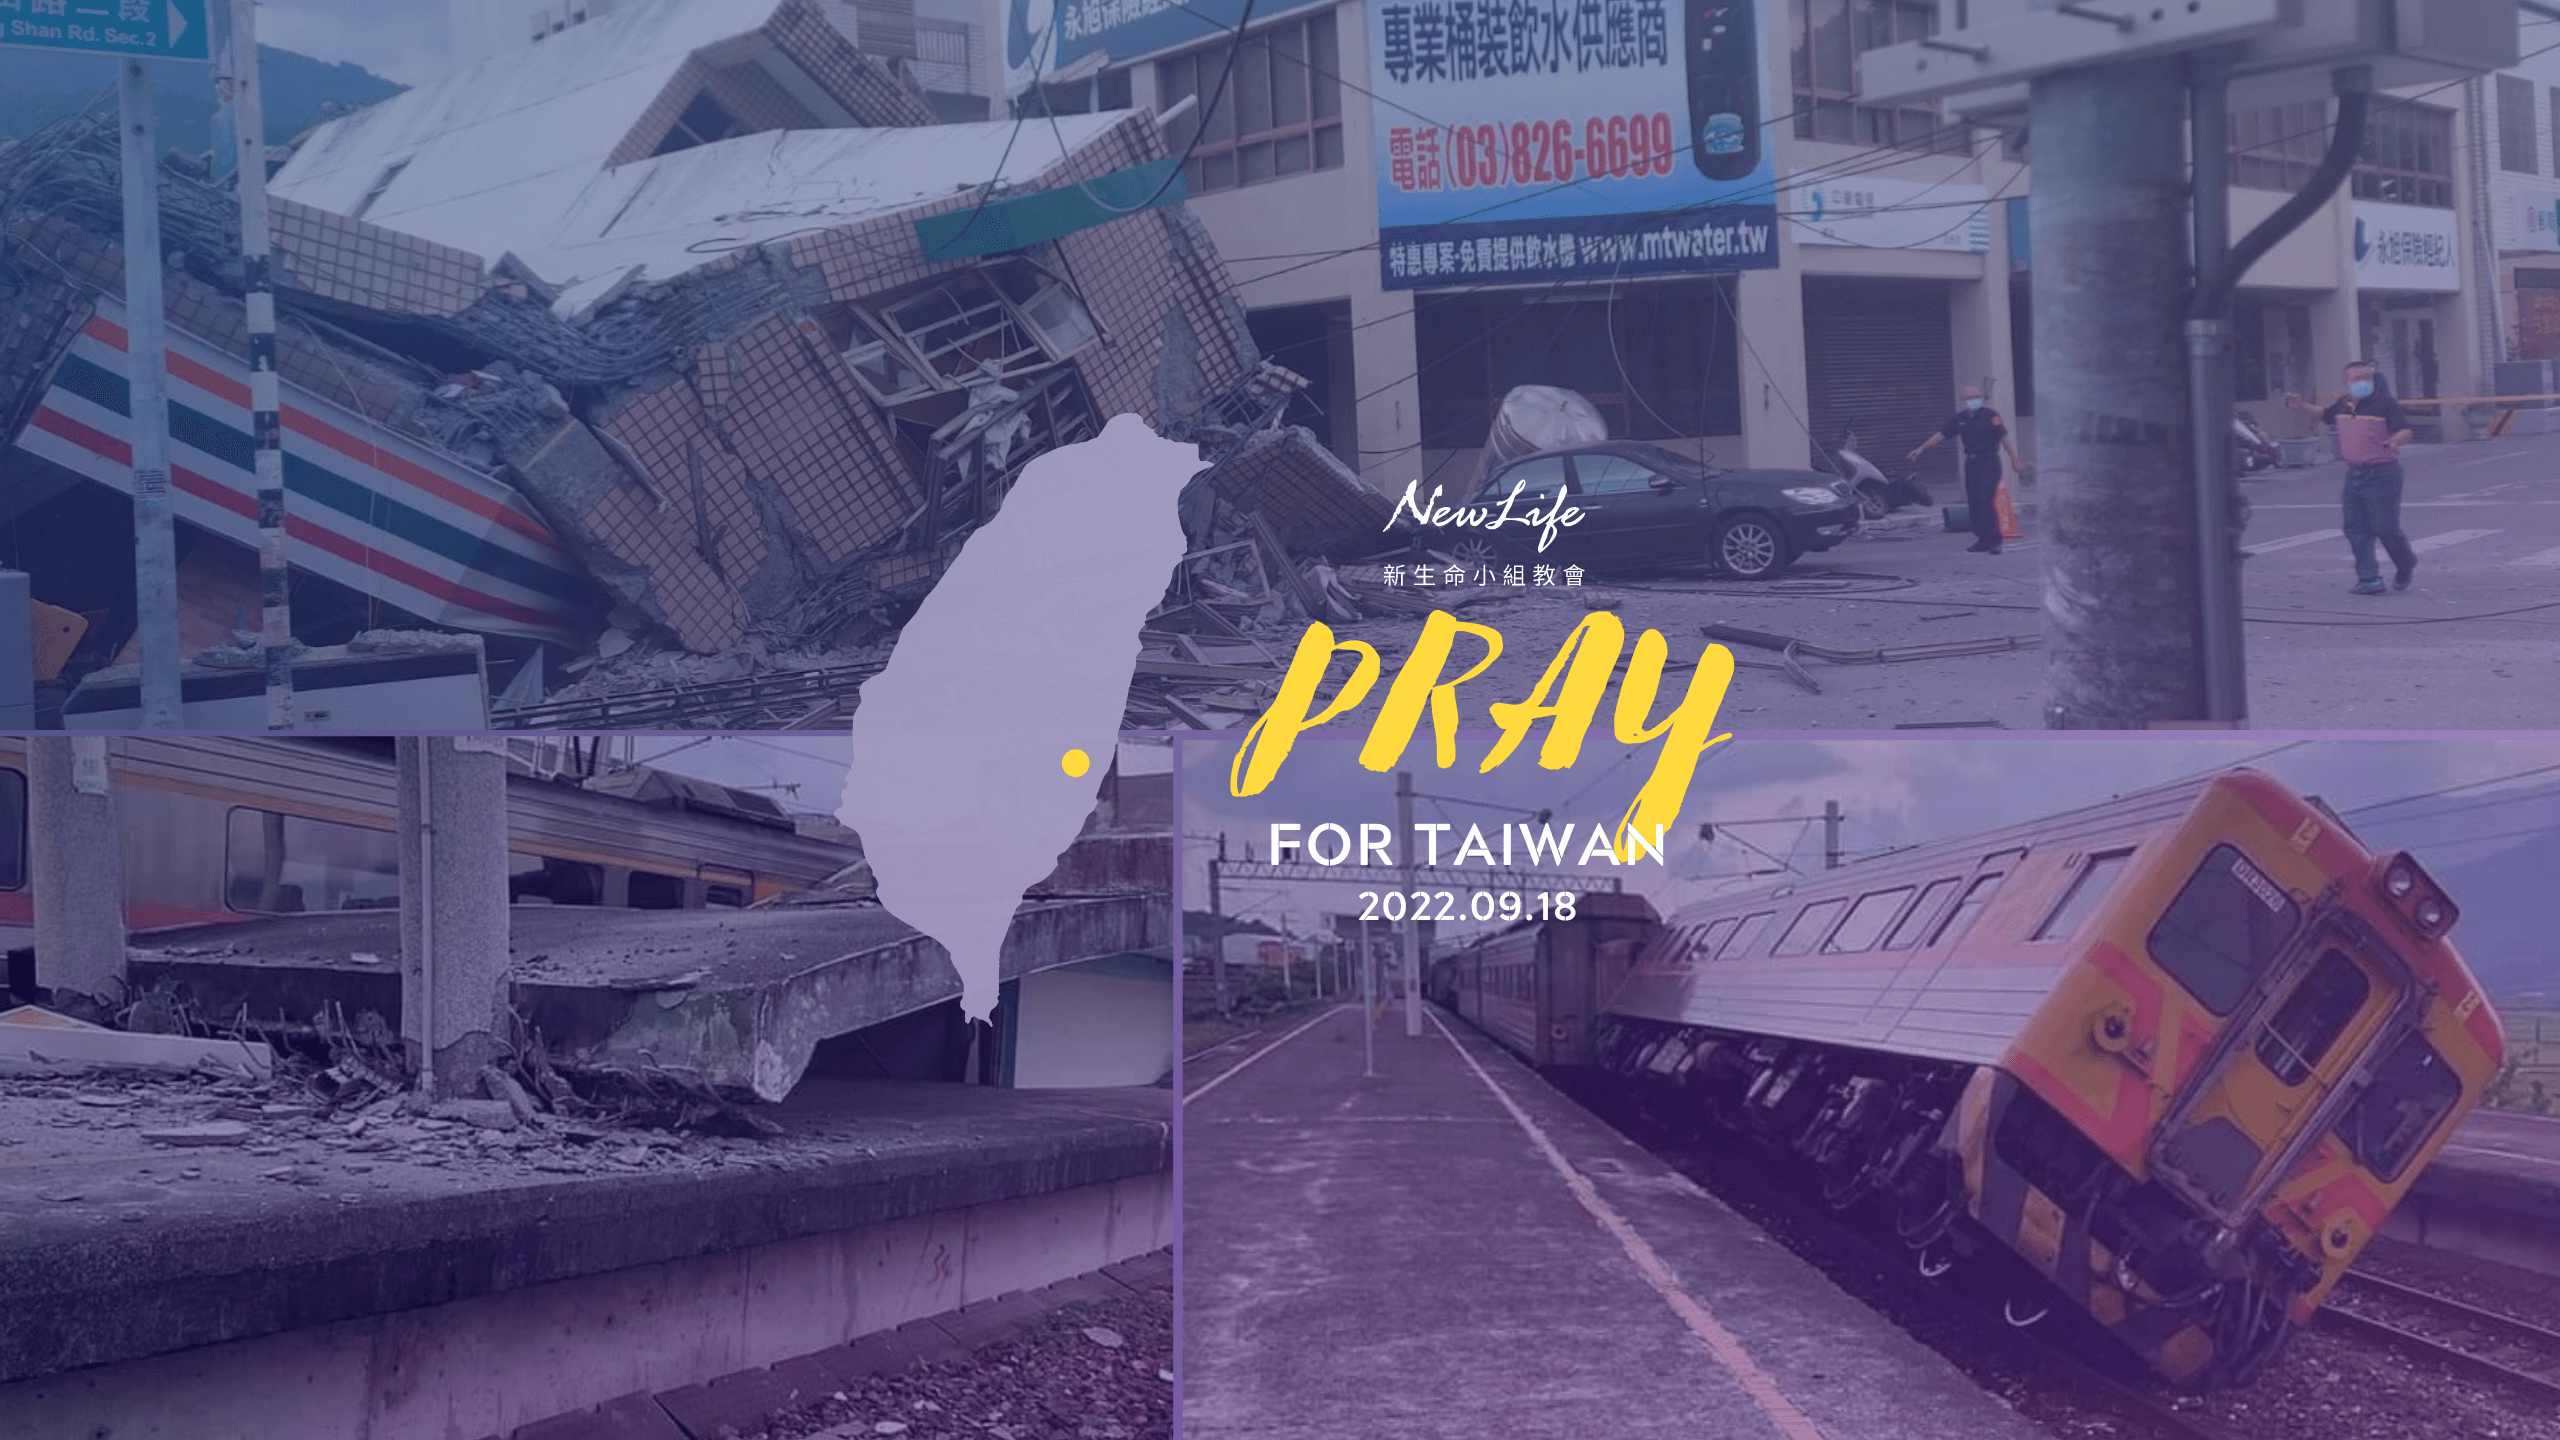 【代禱消息】東部918強震 為台灣平安禱告